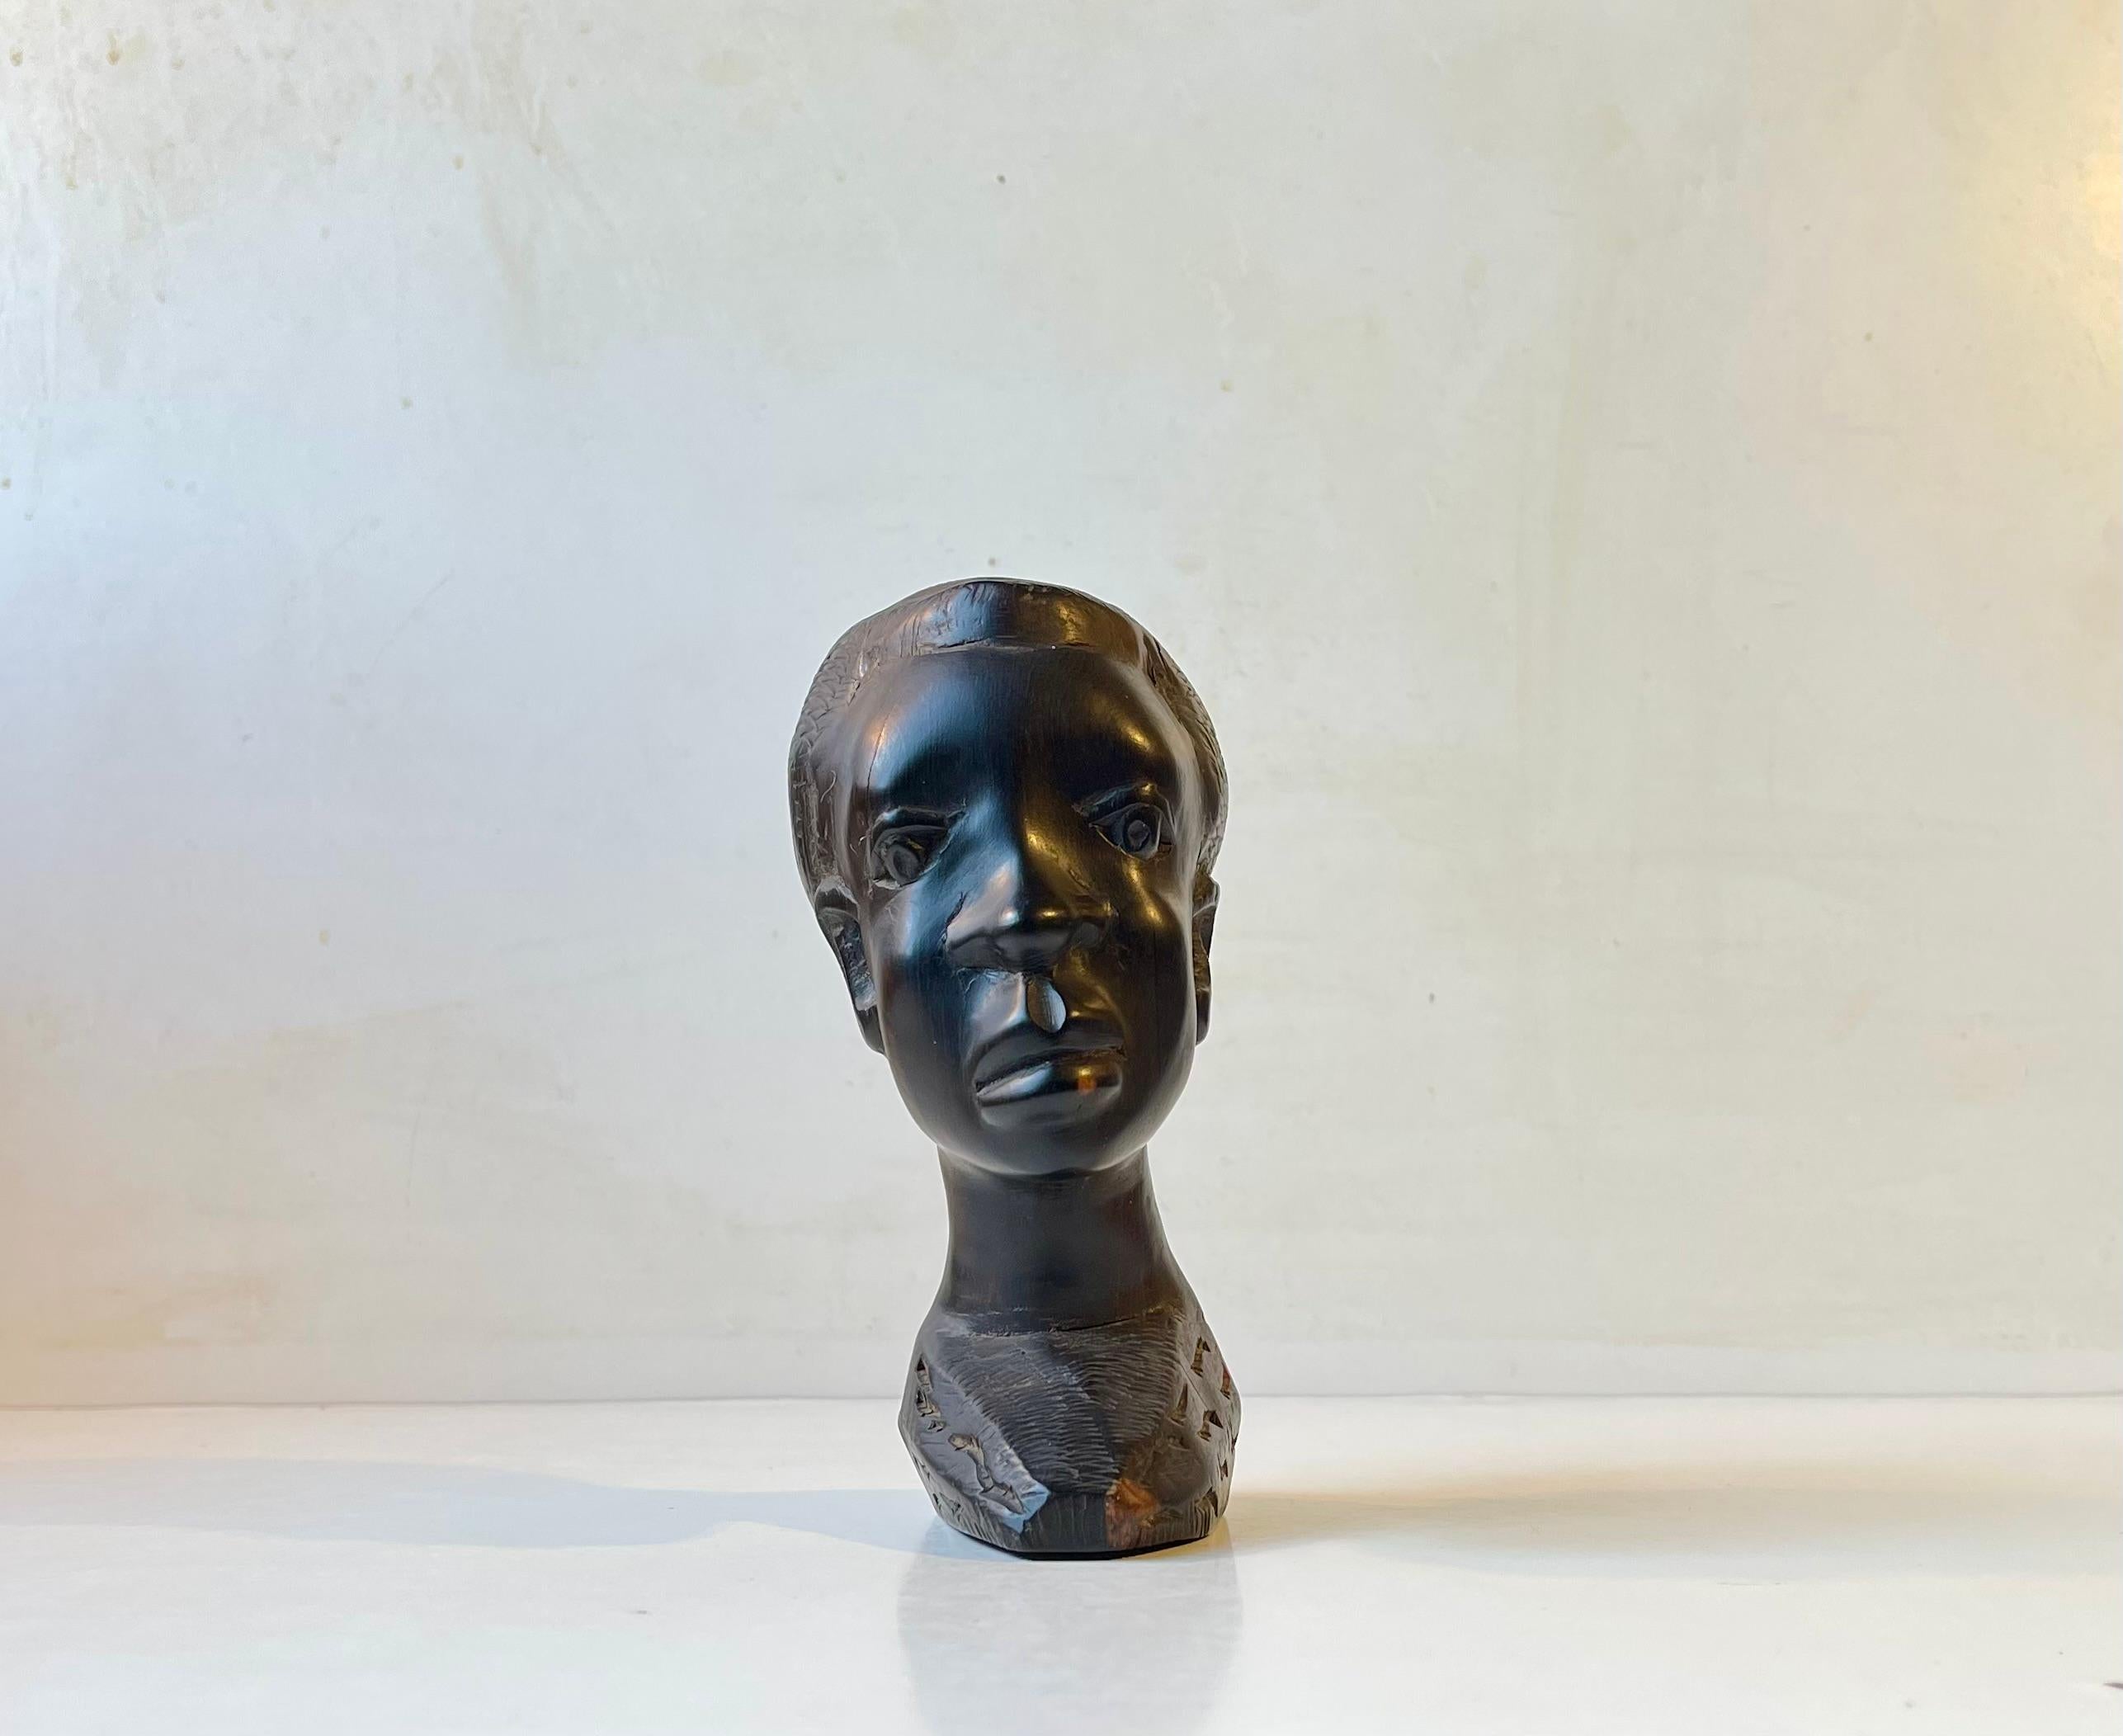 Buste à tête africaine de petite taille sculpté à la main dans du bois noir. Il est légèrement incliné - il penche d'un côté. Il présente des détails et des textures d'une grande finesse. En particulier les pommettes et les cheveux. Il a été